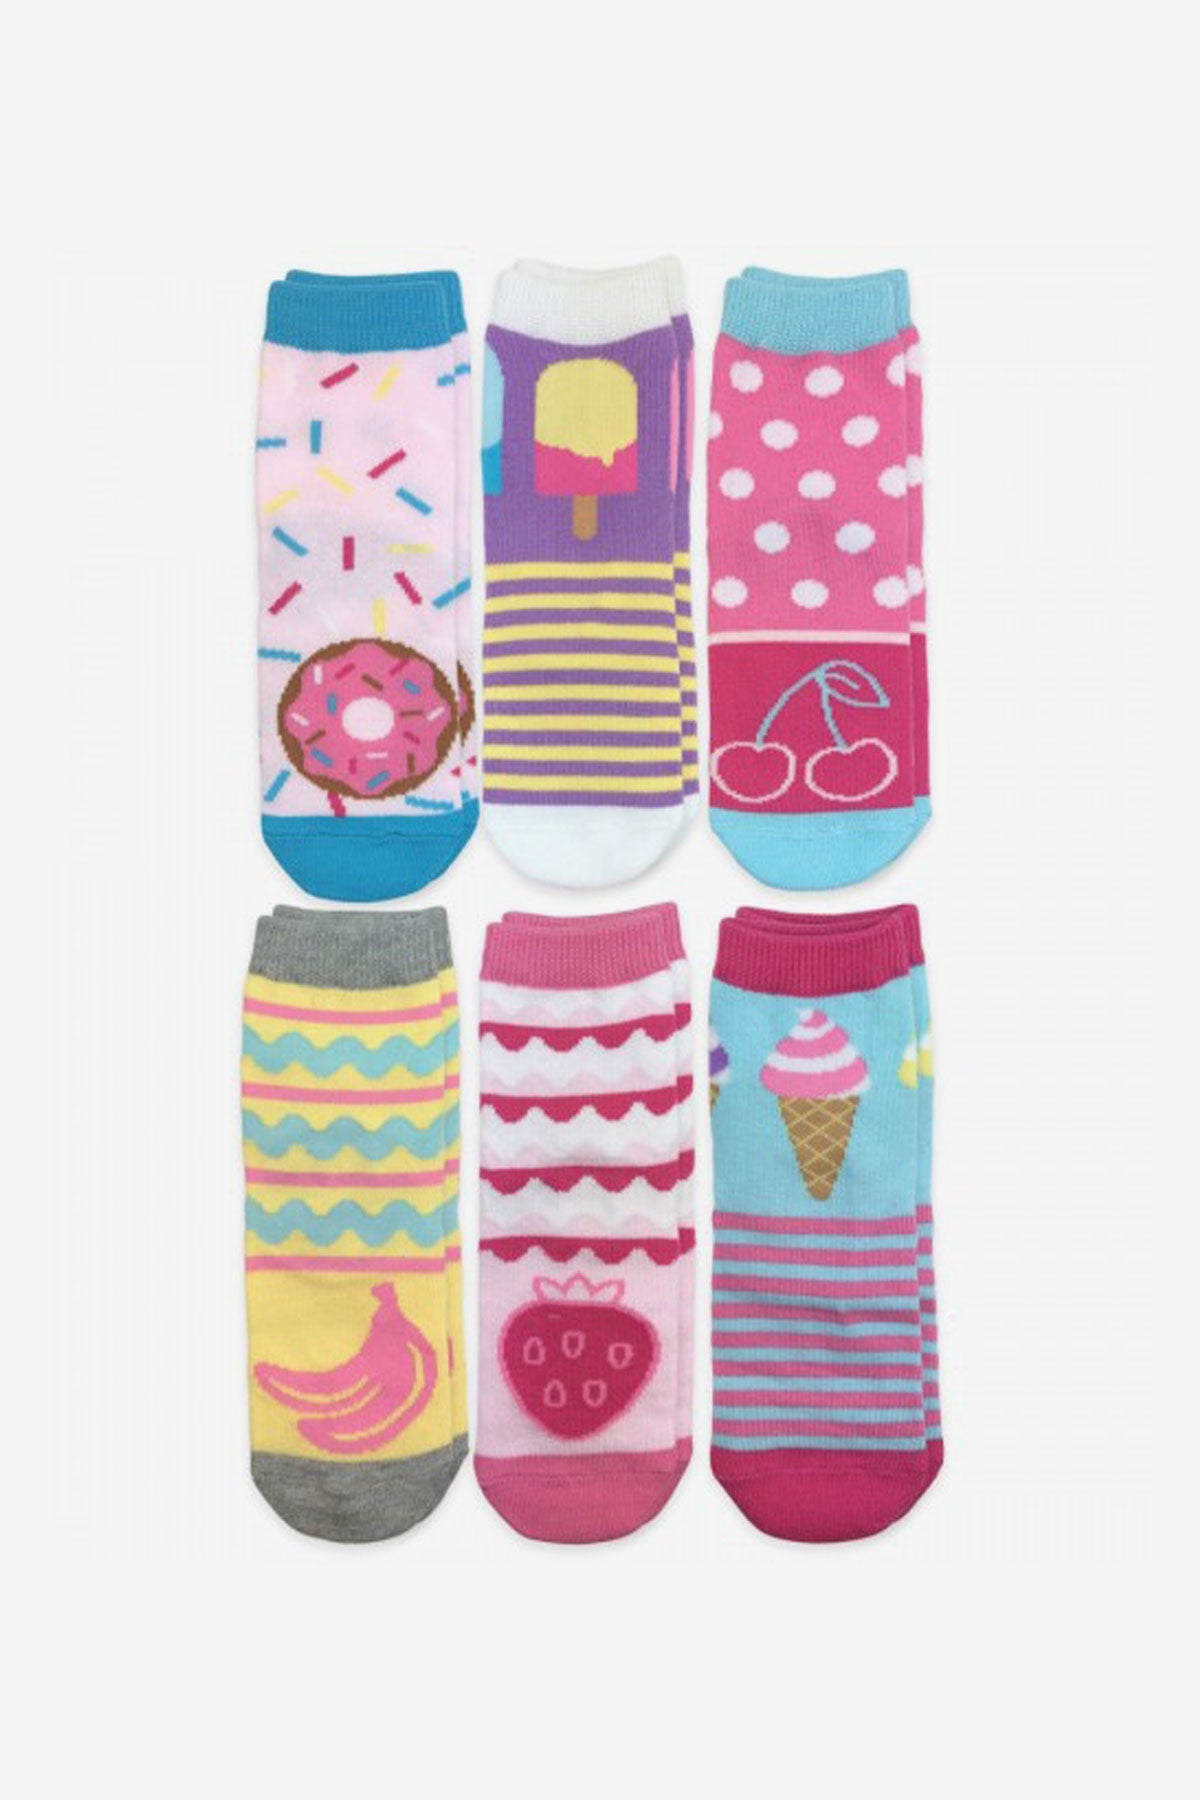 Jefferies Socks Sweet Treats Crew Kids Socks 6-Pack – Mini Ruby